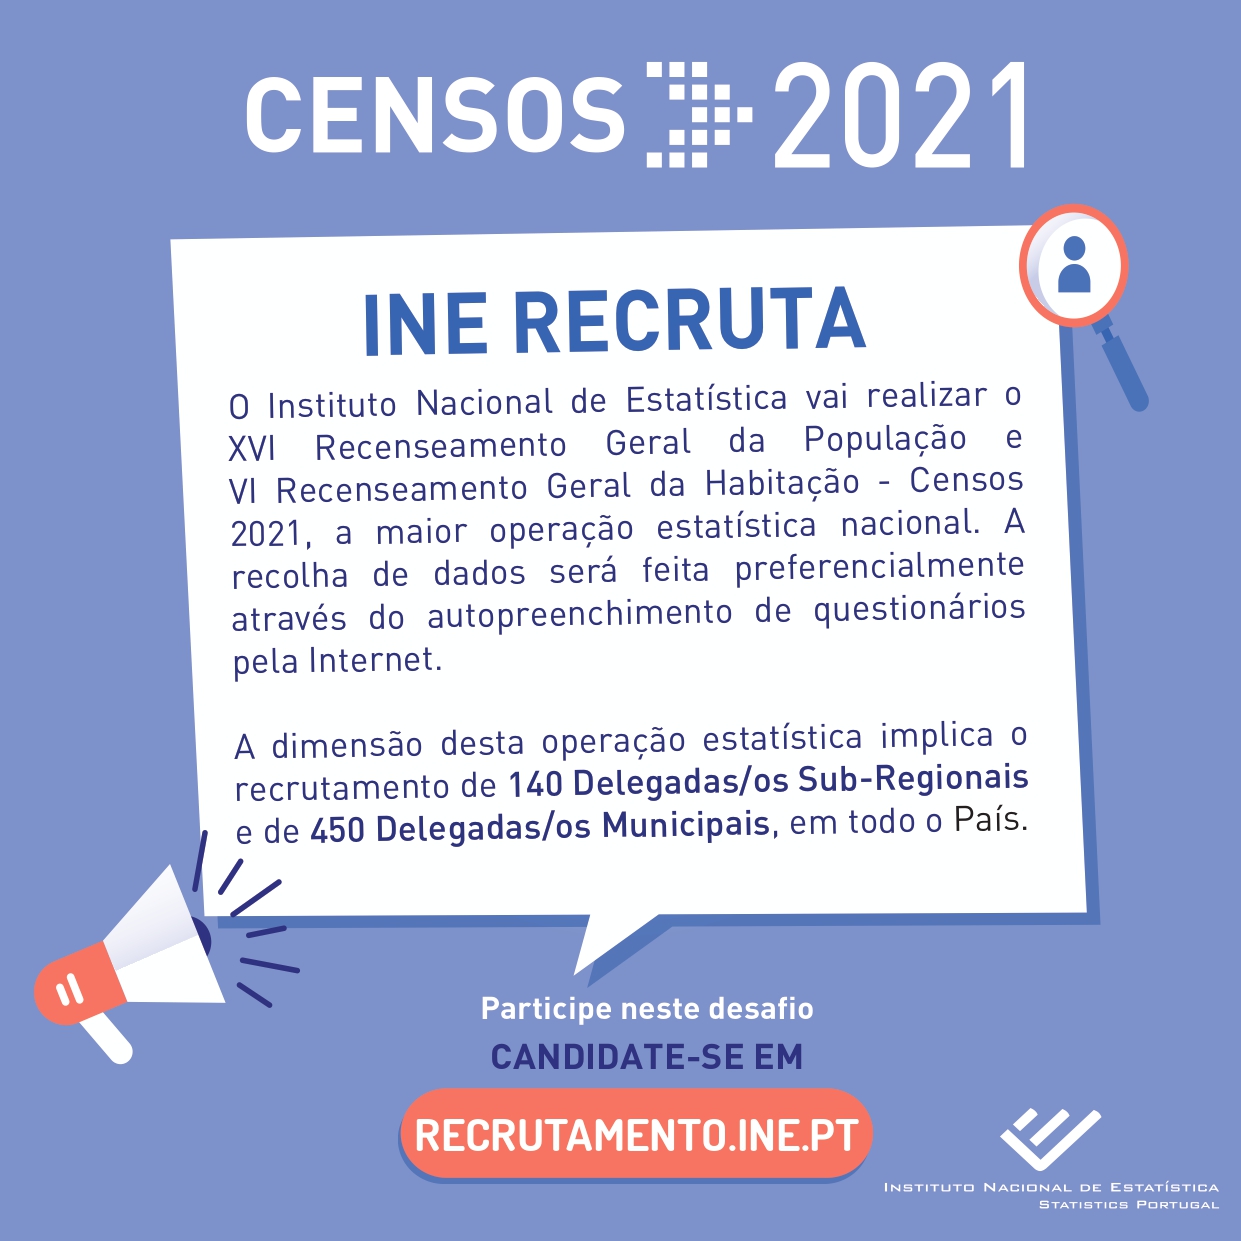 CENSOS 2021 - RECRUTAMENTO DE DELEGADAS/OS SUB-REGIONAIS e DELEGADAS/OS MUNICIPAIS